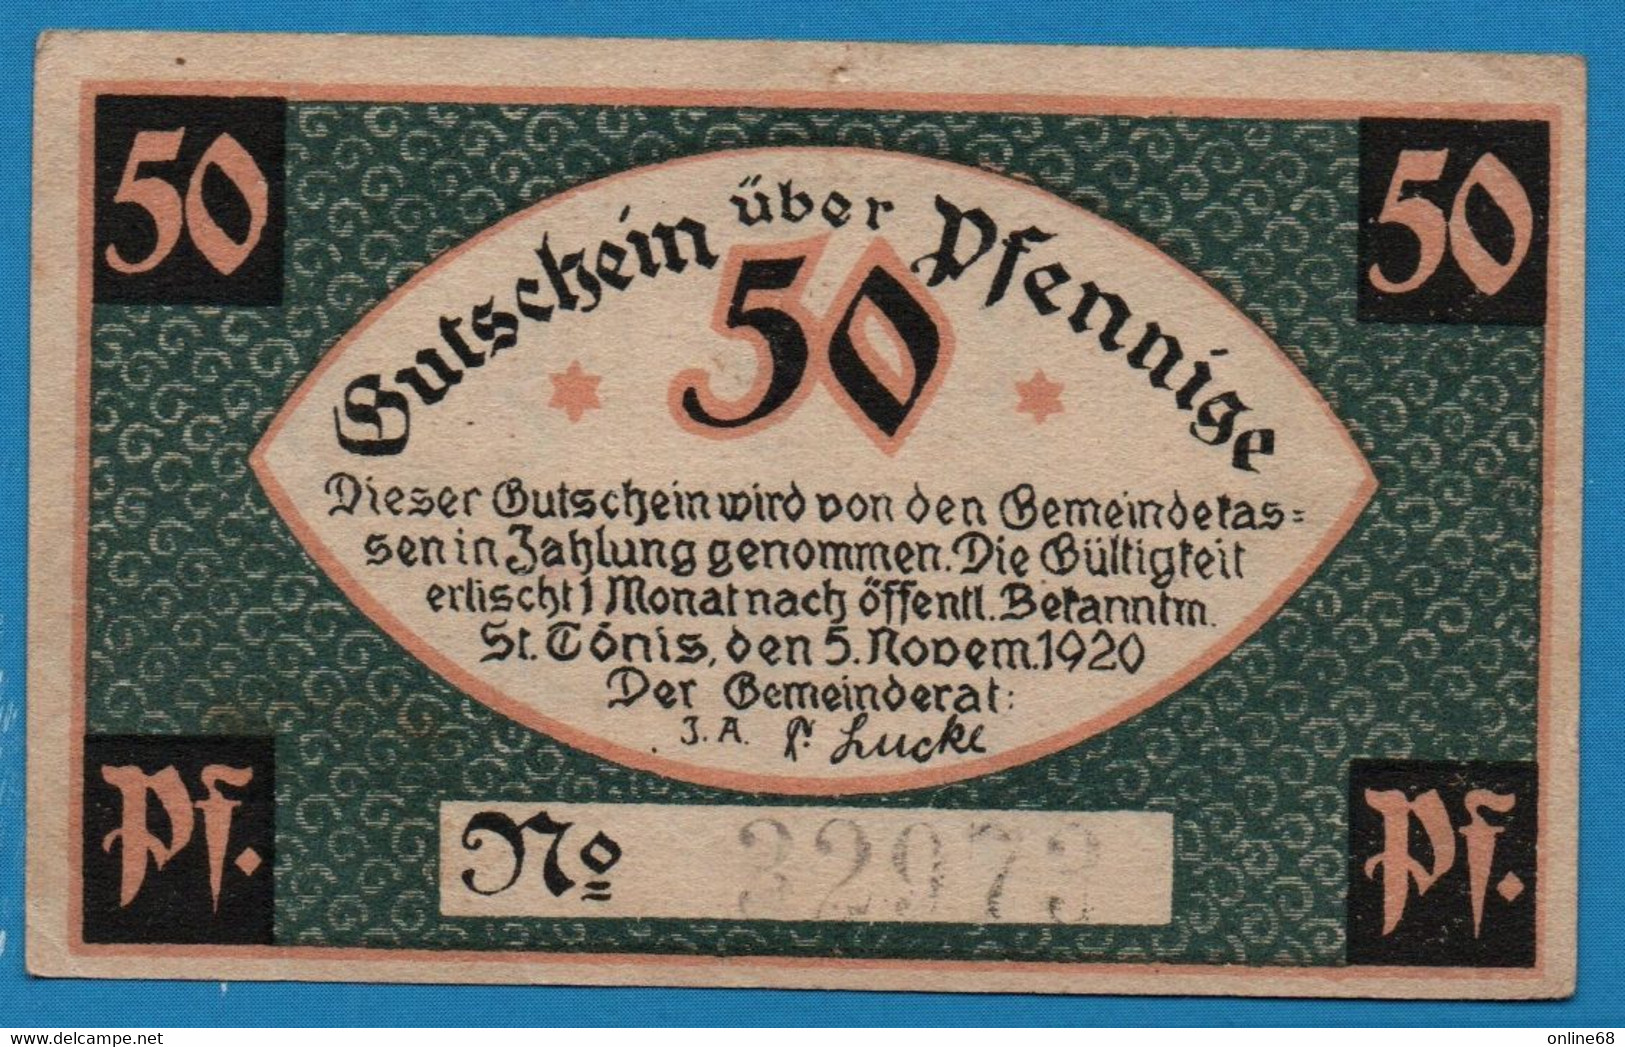 DEUTSCHLAND St. Tönis Gemeinde 50 Pfennige 	05/11/1920 No 32973 - [11] Local Banknote Issues